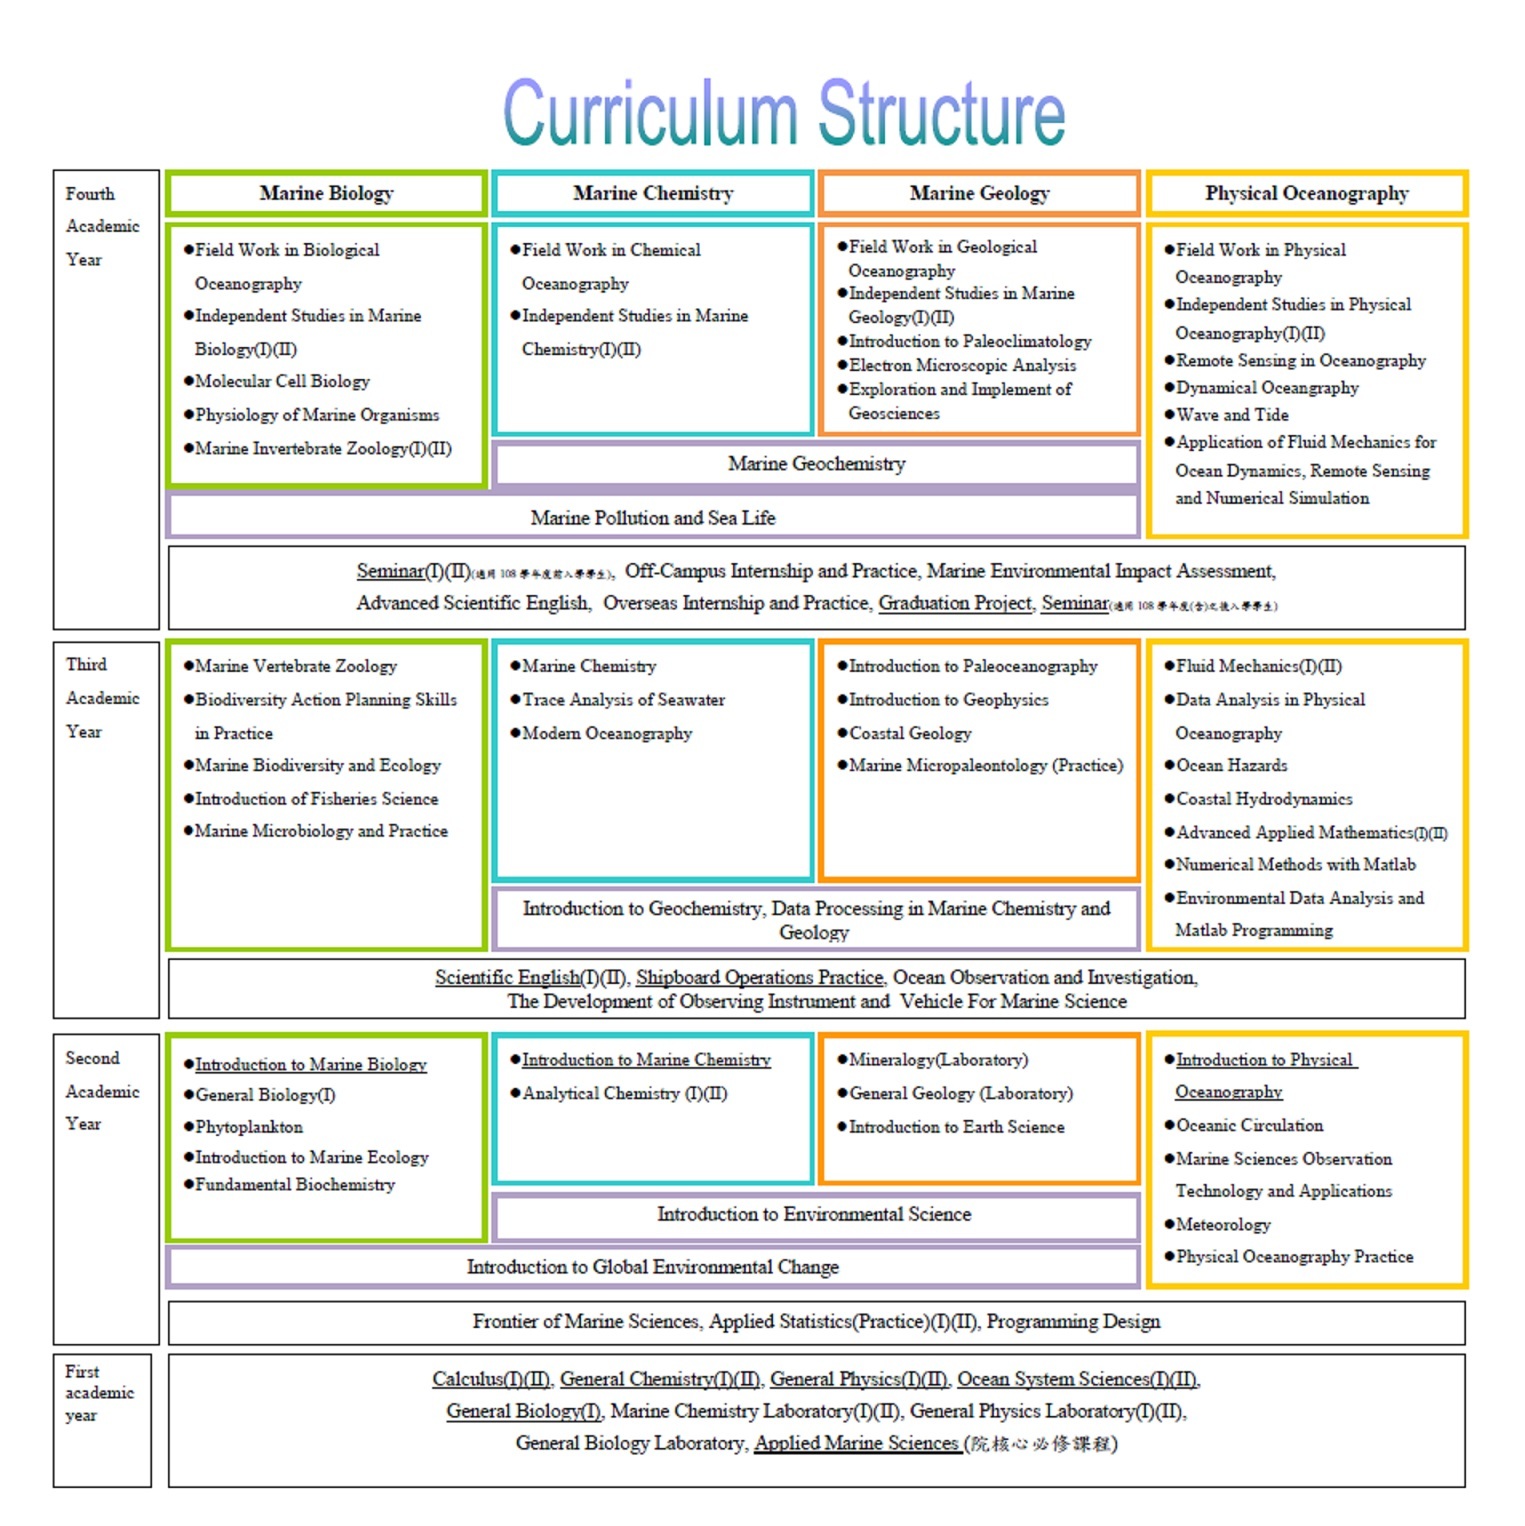 Diagram of the curriculum structure for the undergraduate program